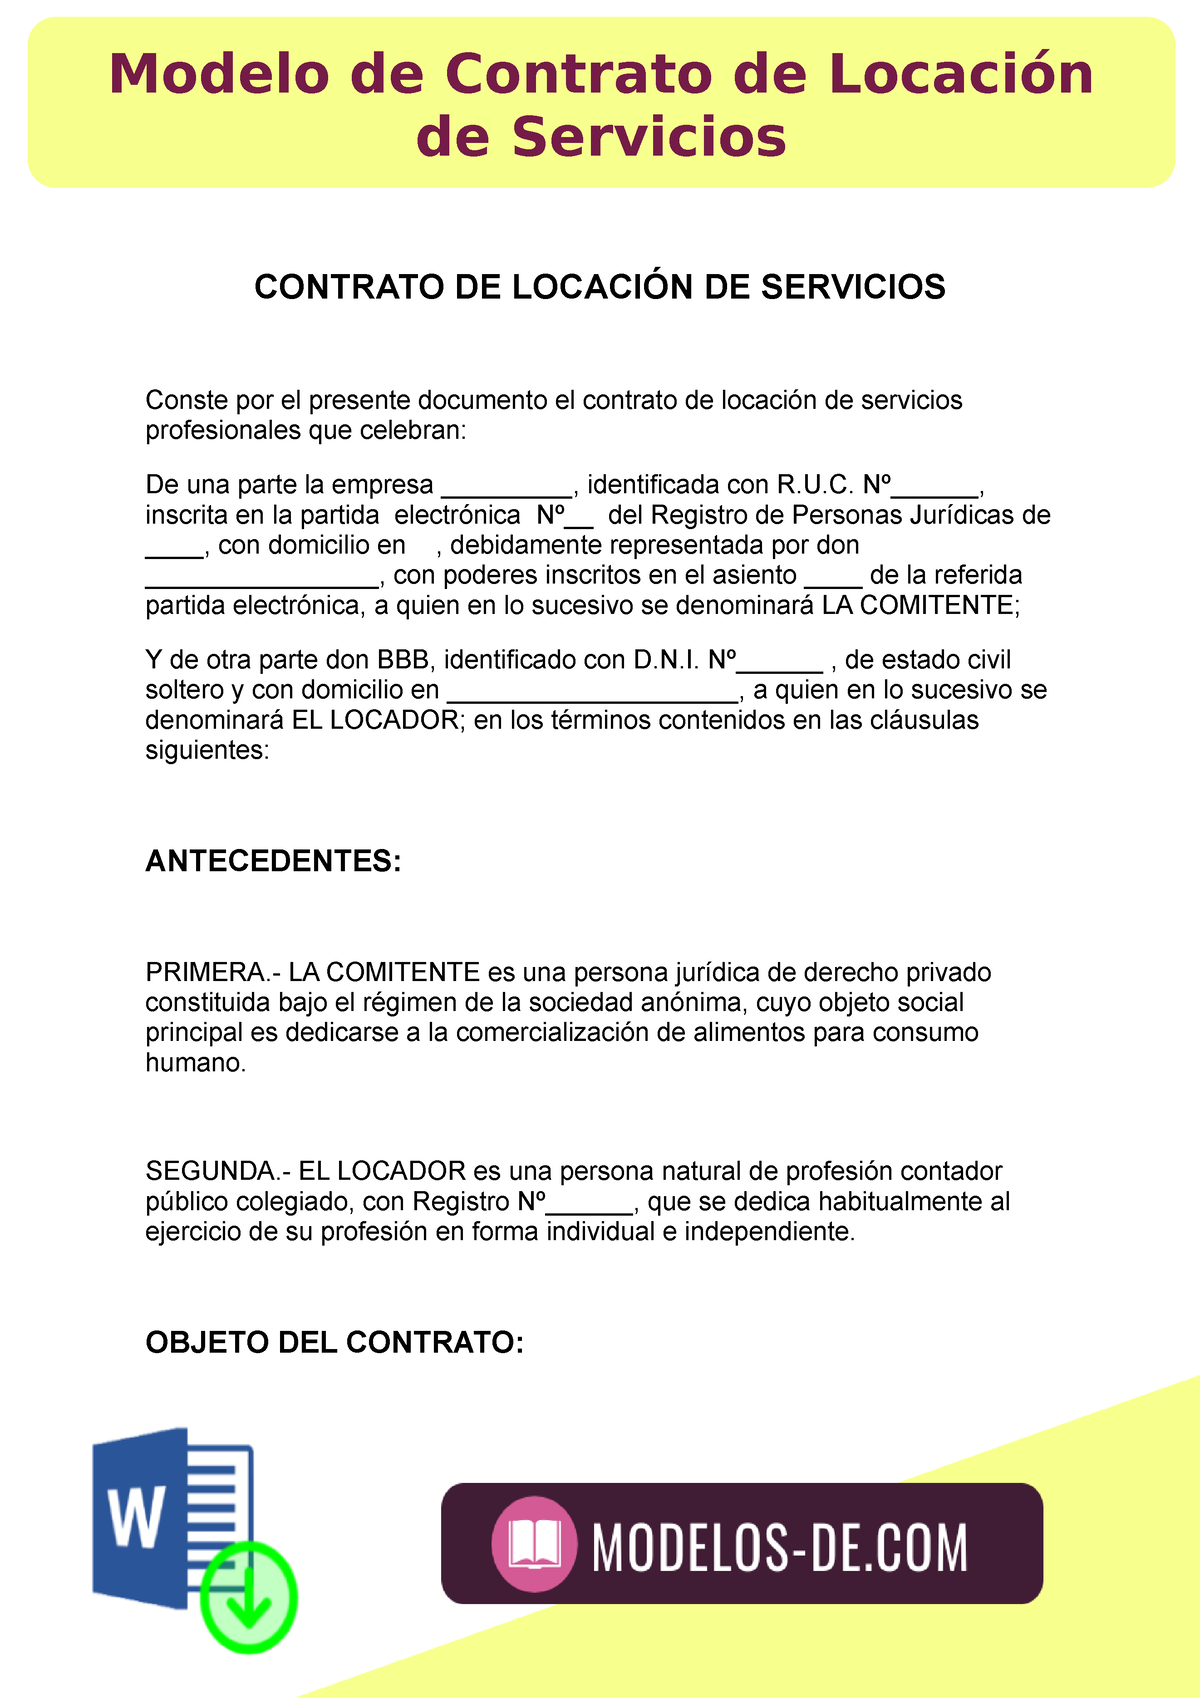 Modelo De Contrato De Locación De Servicios Contrato De LocaciÓn De Servicios Conste Por El 4077